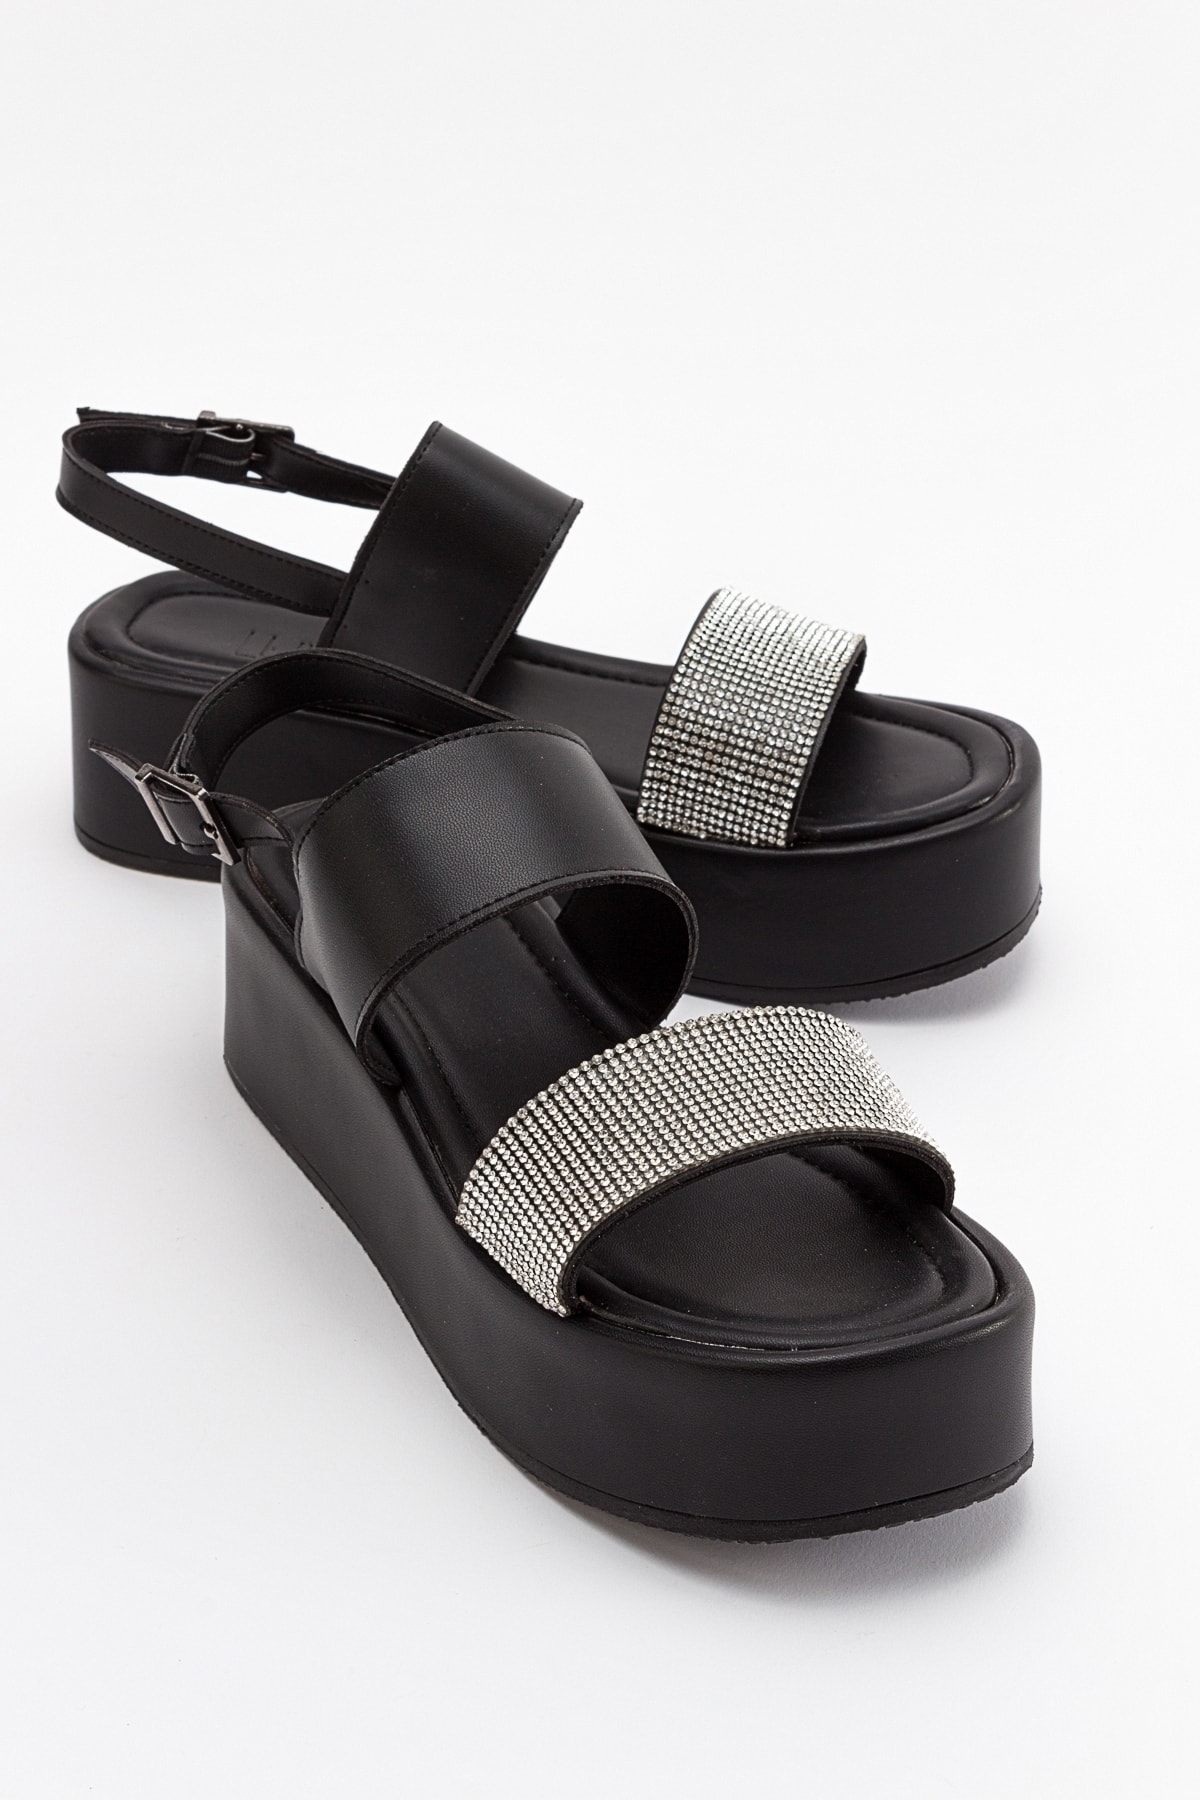 Levně LuviShoes Pantos Women's Black Sandals